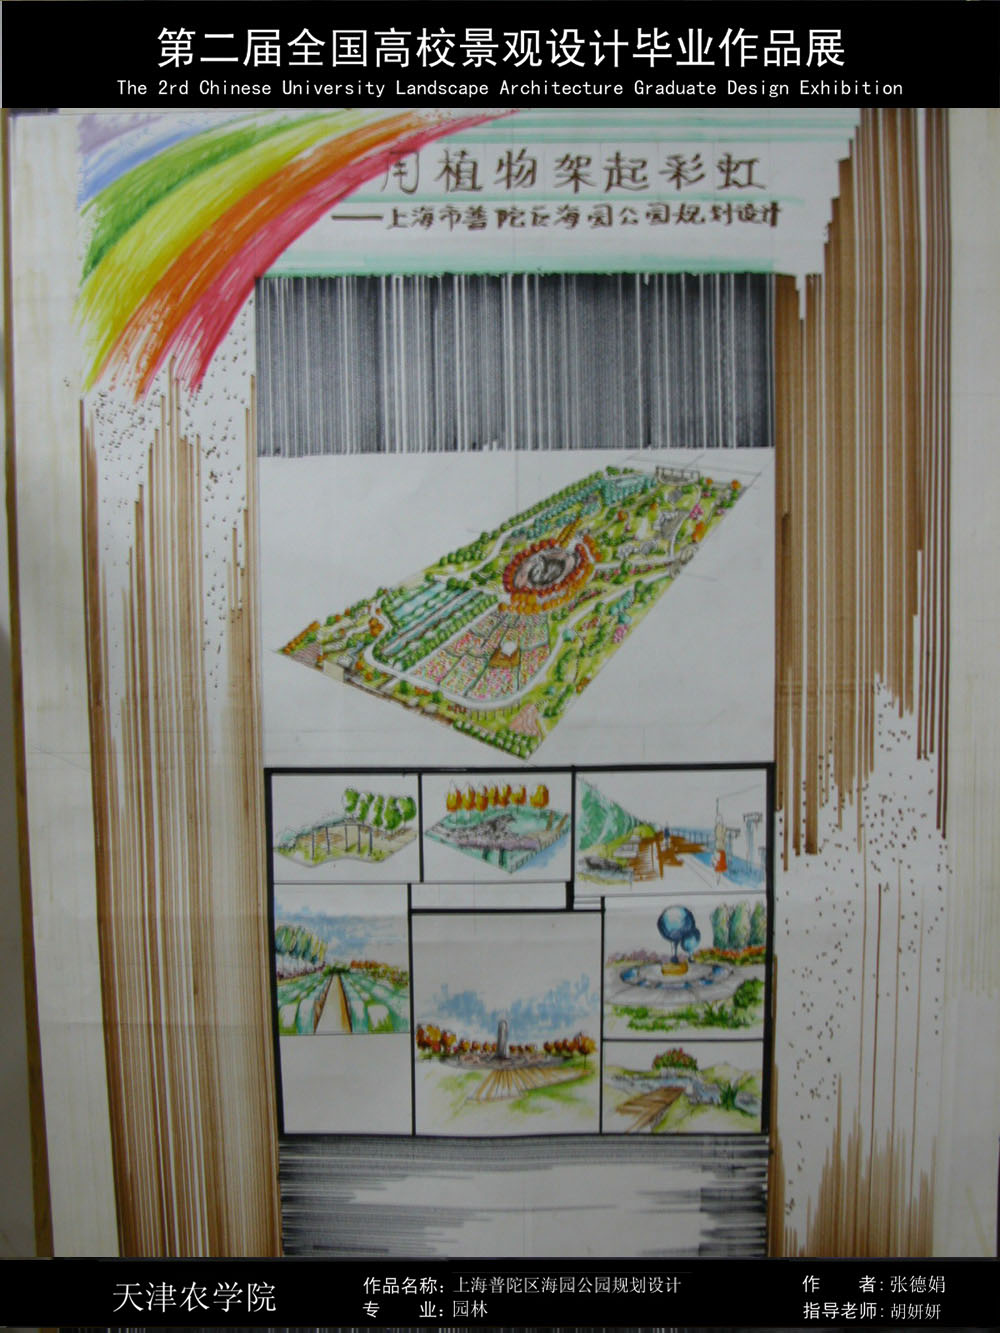 用植物架起彩虹——上海普陀区海园公园规划设计-1